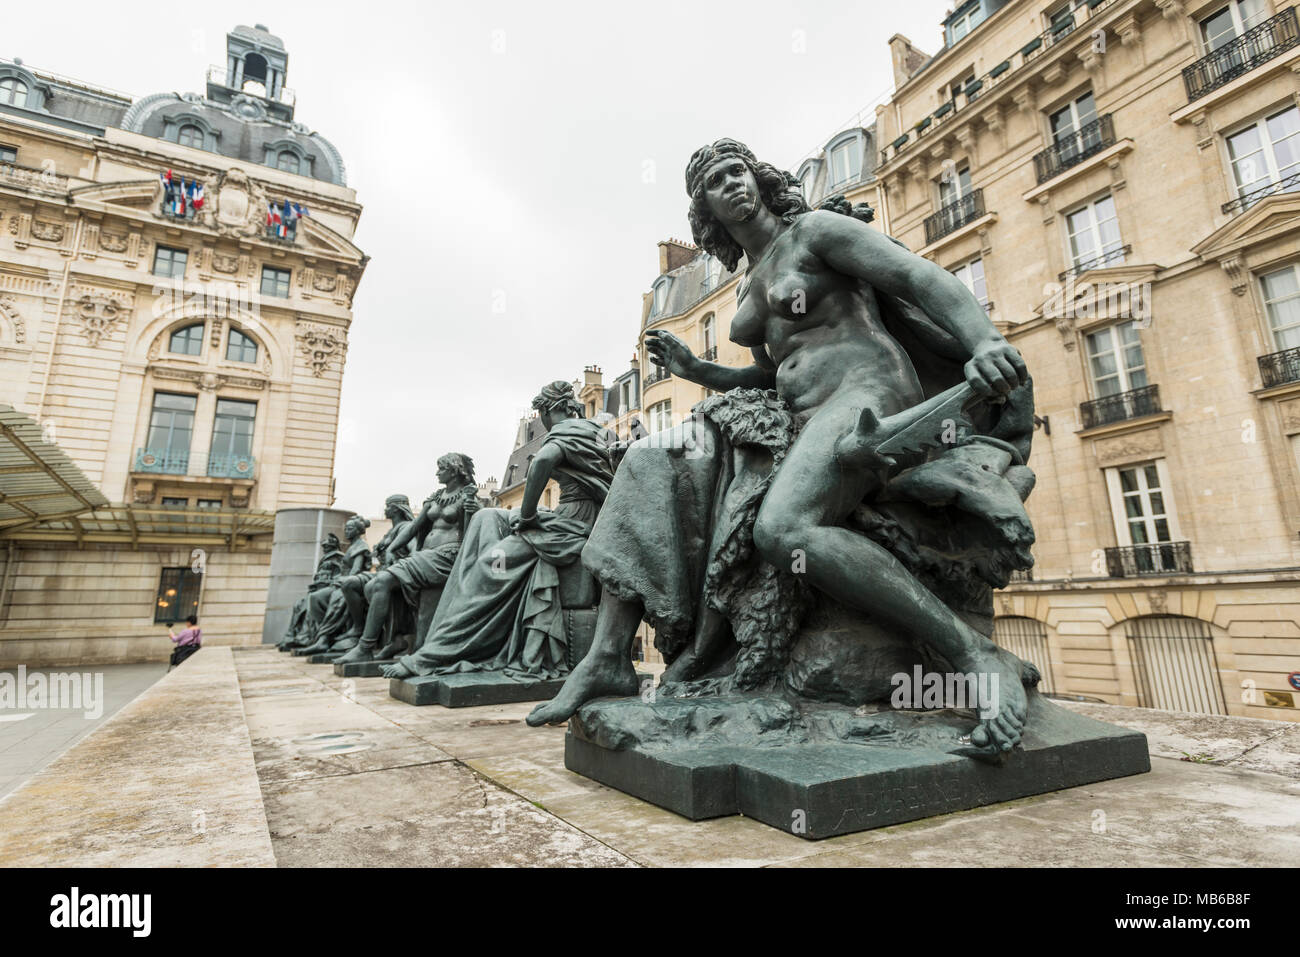 Sculture in bronzo denominata 'i sei continenti" presso il Musée d'Orsay a Parigi, Francia Foto Stock